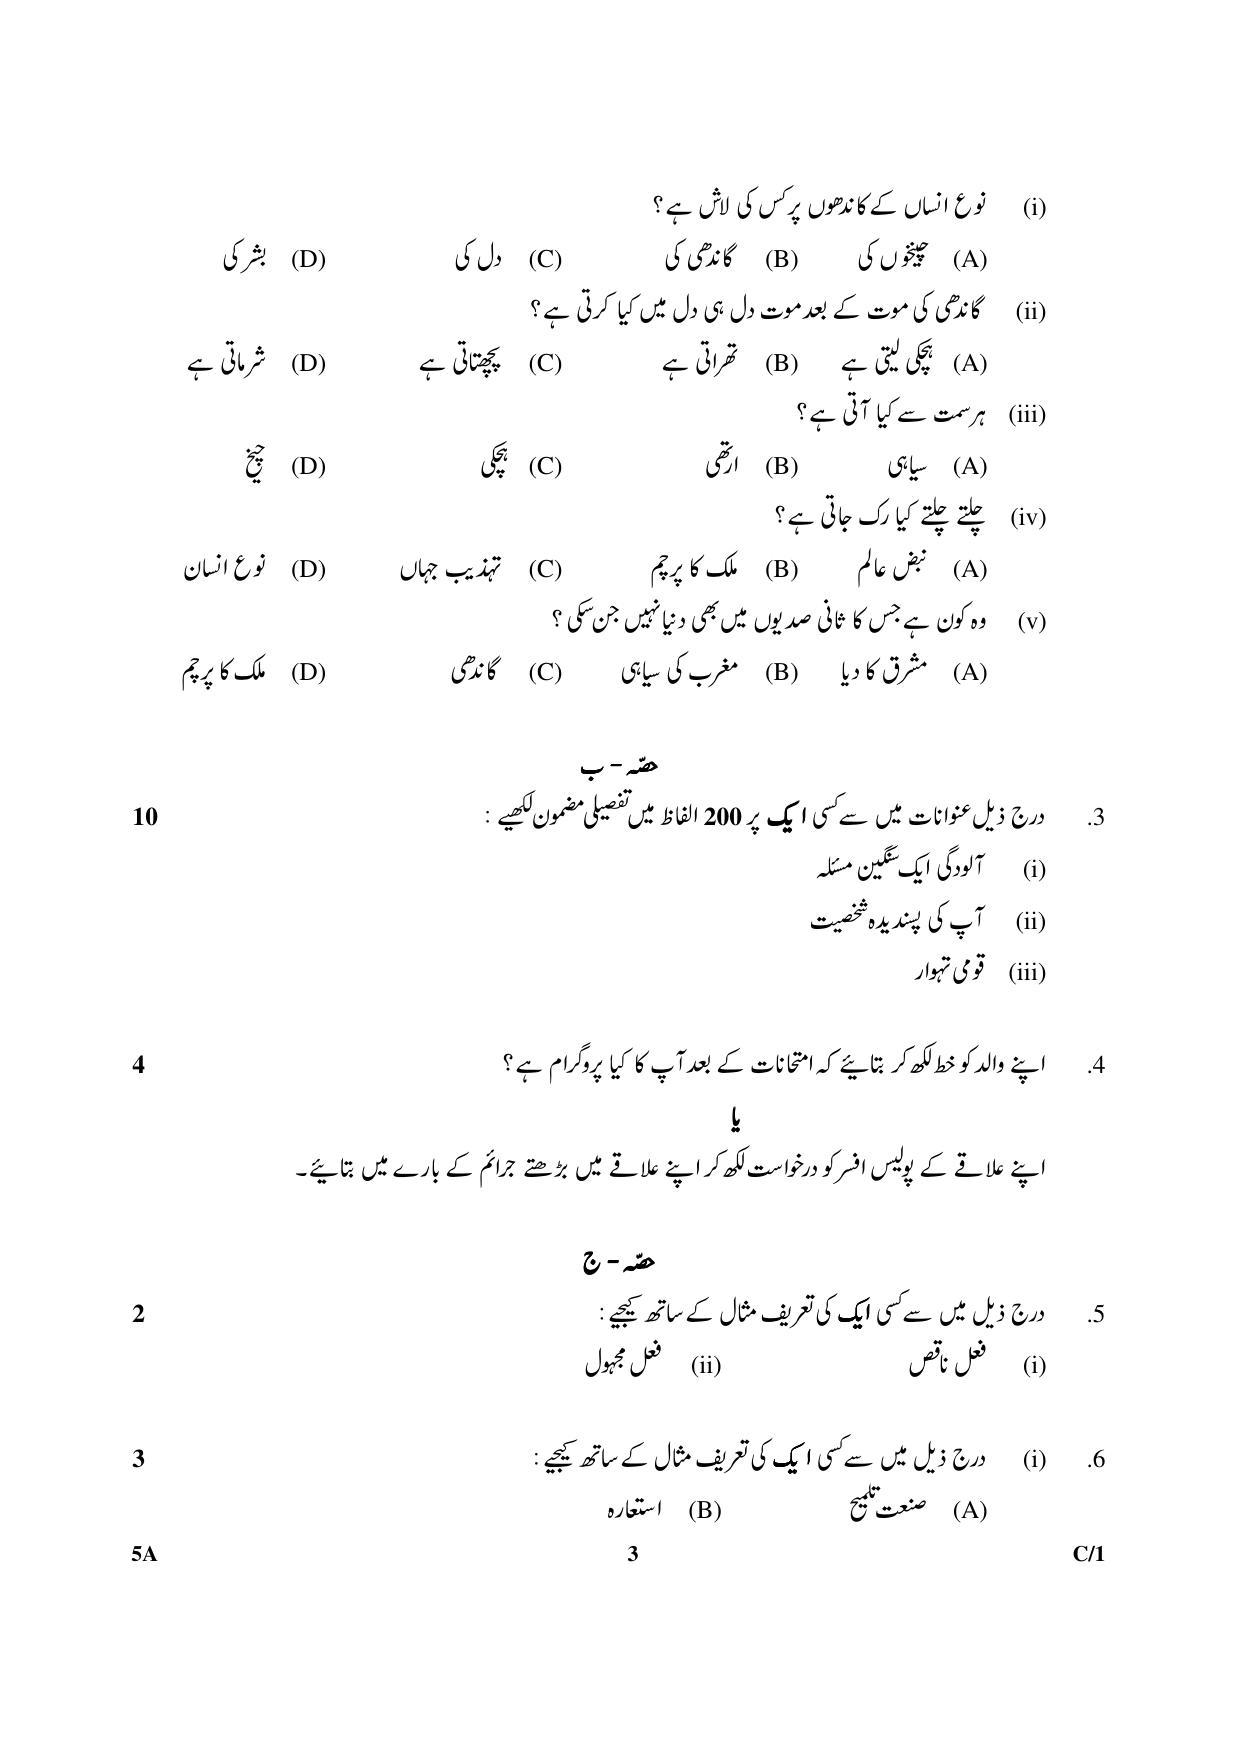 CBSE Class 10 5A Urdu (Course A) 2018 Compartment Question Paper - Page 3